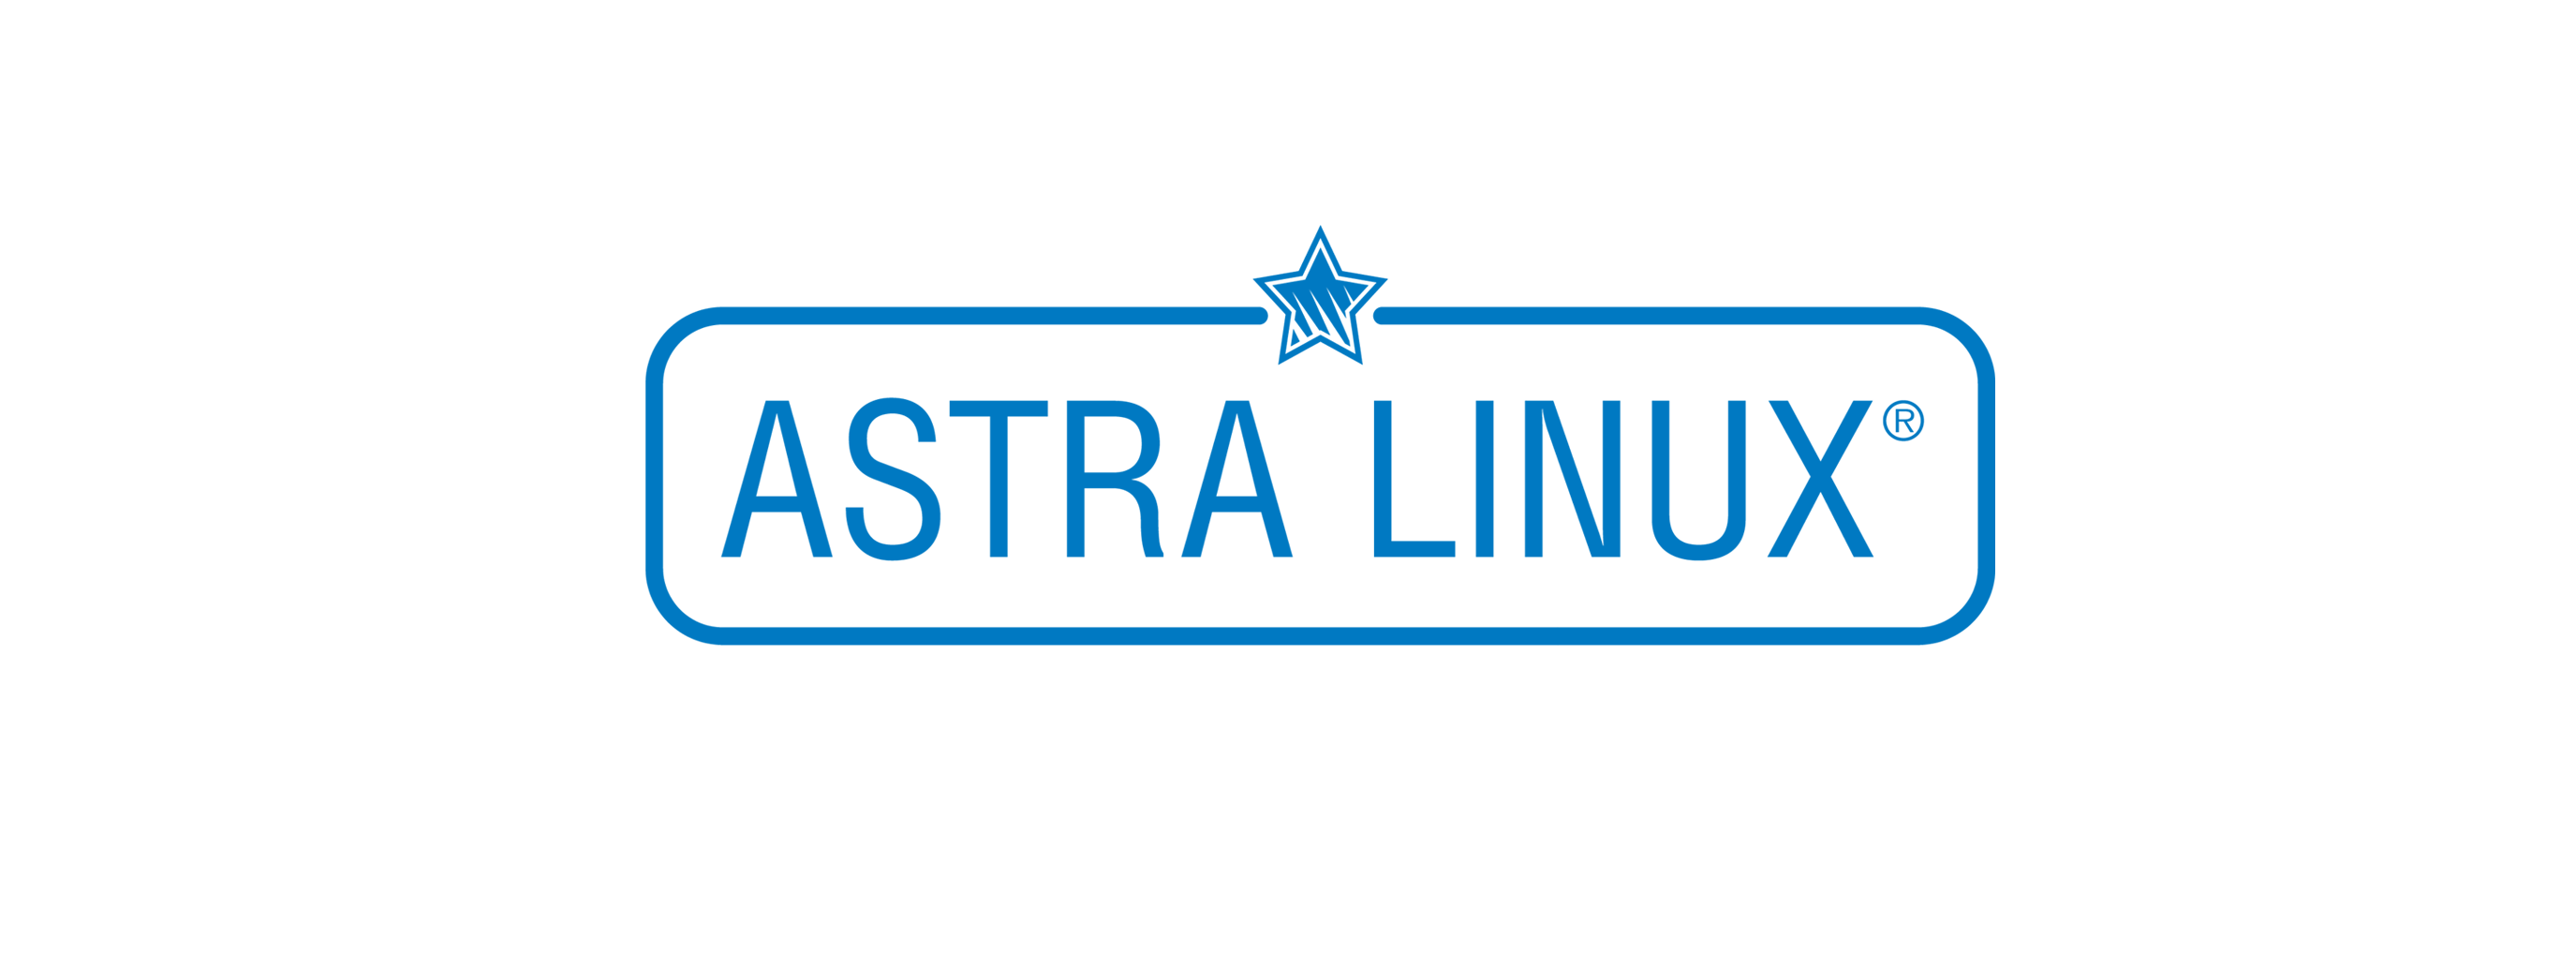 Лицензия РусБИТех Astra Linux Special Edition (очередное обновление 1.7), уровень защищенности Максимальный (Смоленск), РУСБ.10015-01 (ФСТЭК), Russian, на 12 месяцев базовая лицензия для тонкого клиента, диск (OS2101X8617DSK000TN02-SO12)